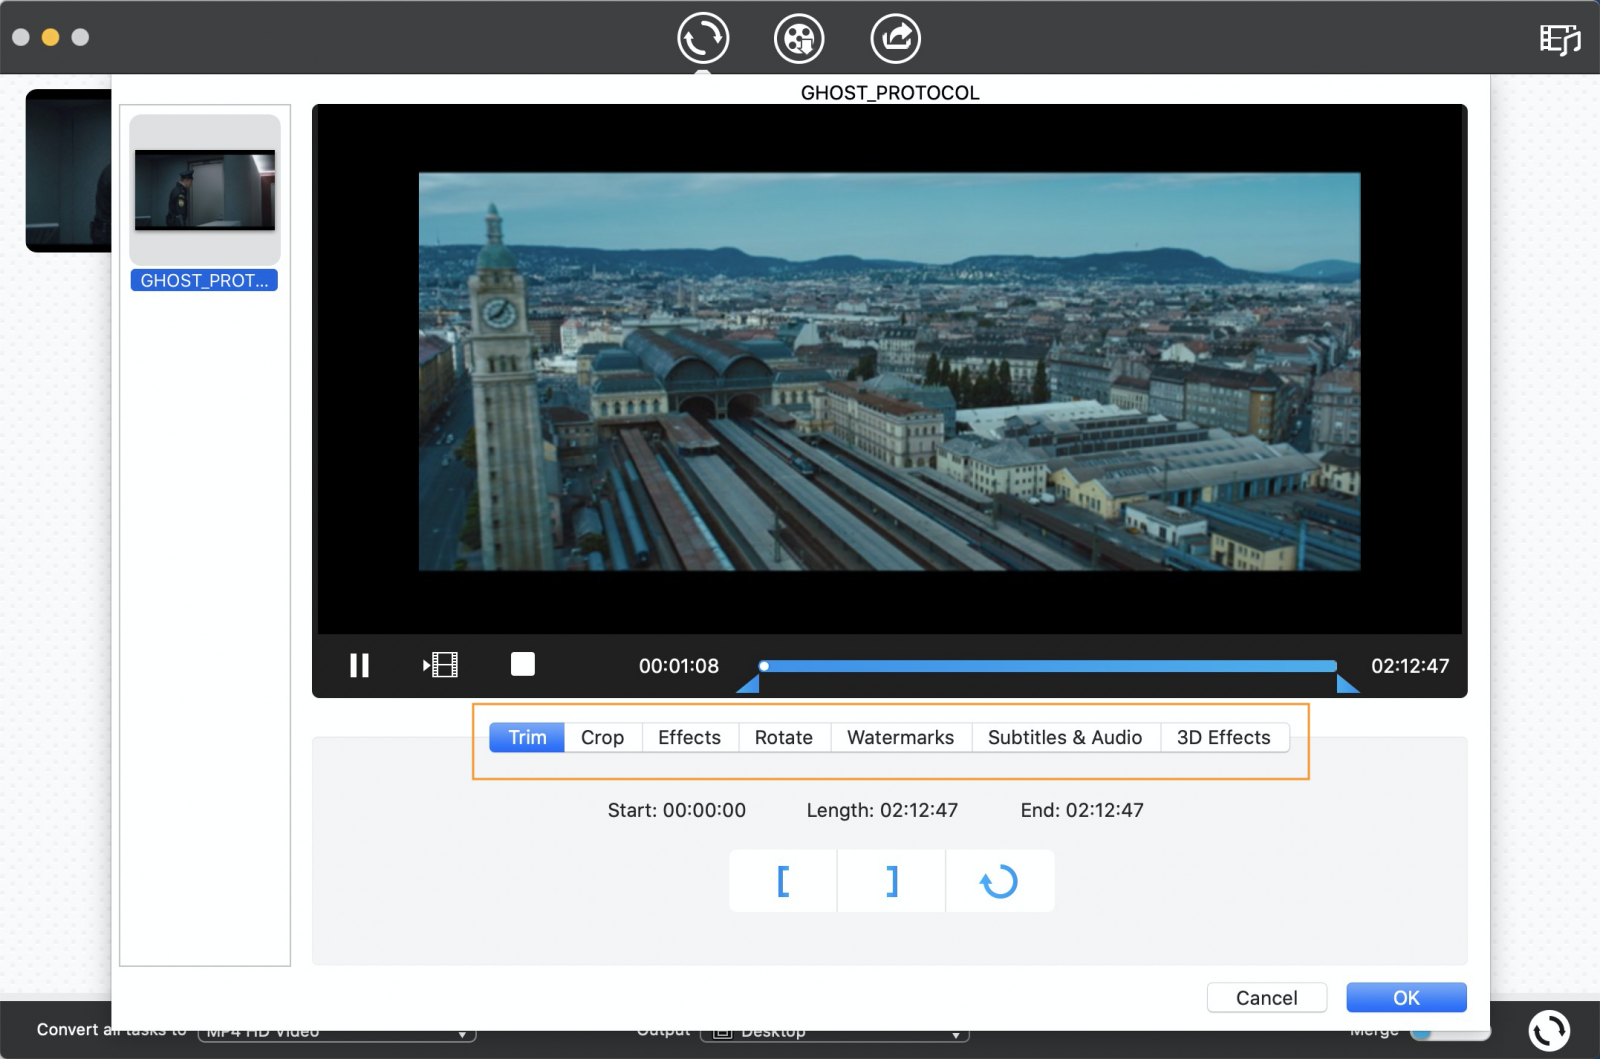 Cisdem DVD Burner download the new version for windows